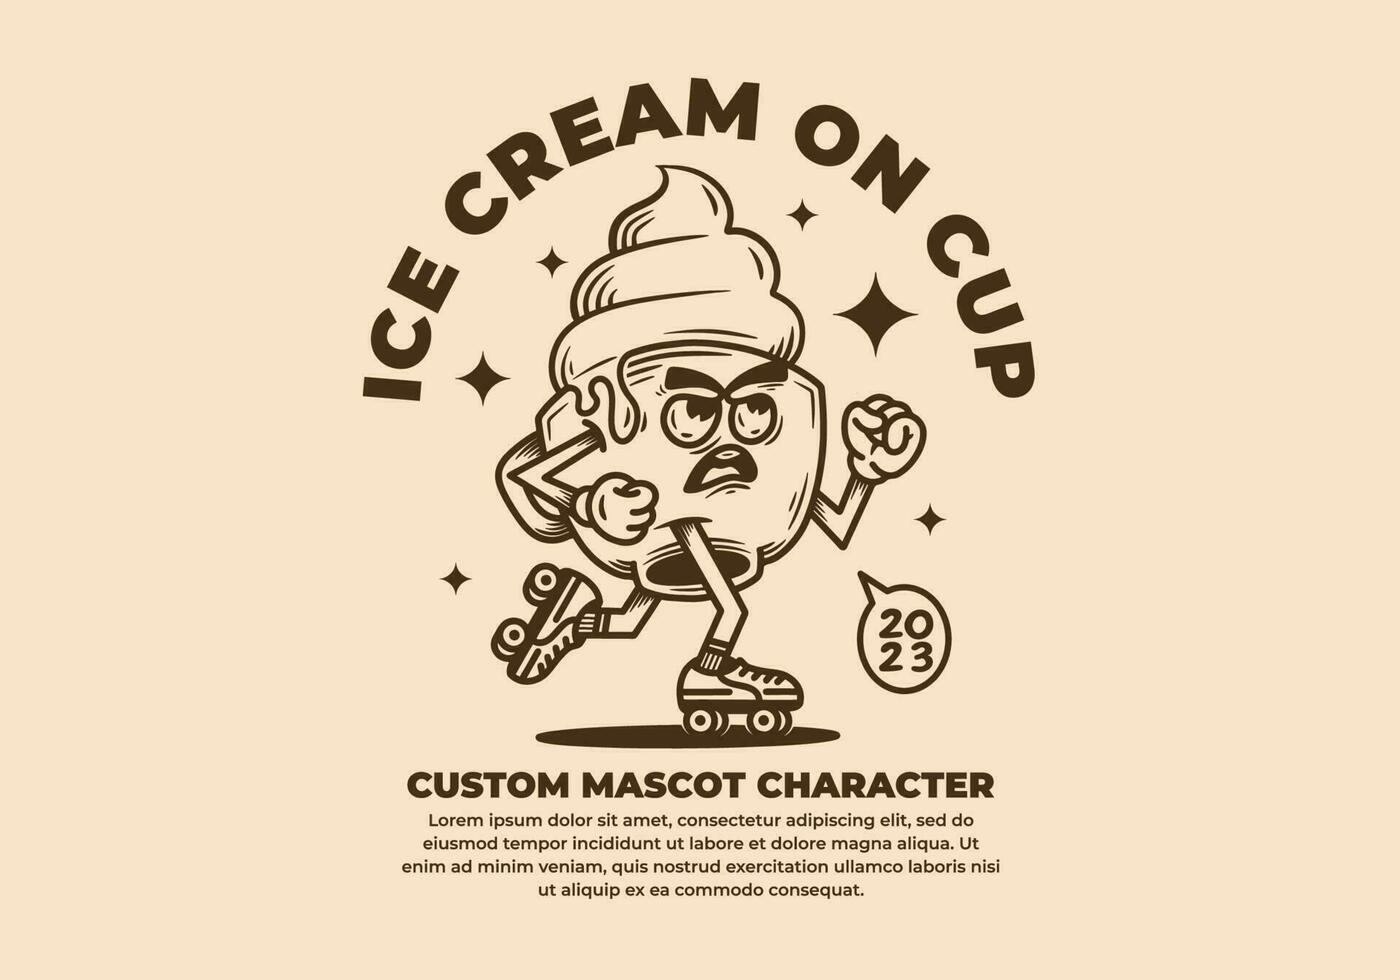 Clásico mascota personaje diseño de hielo crema en taza vector